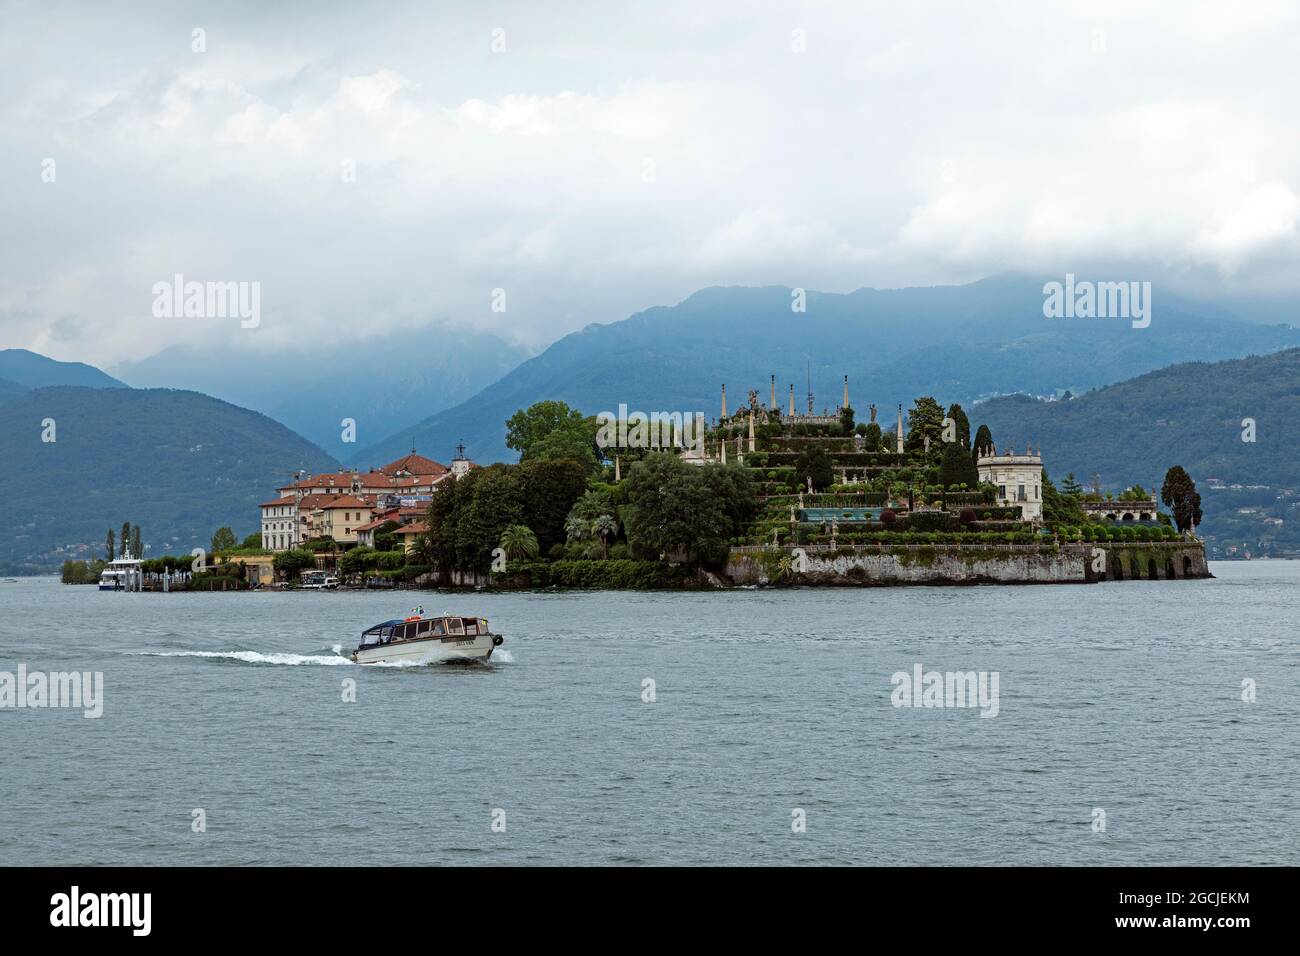 Isola Bella, Stresa, Lago Maggiore, Piamonte, Italia Foto de stock